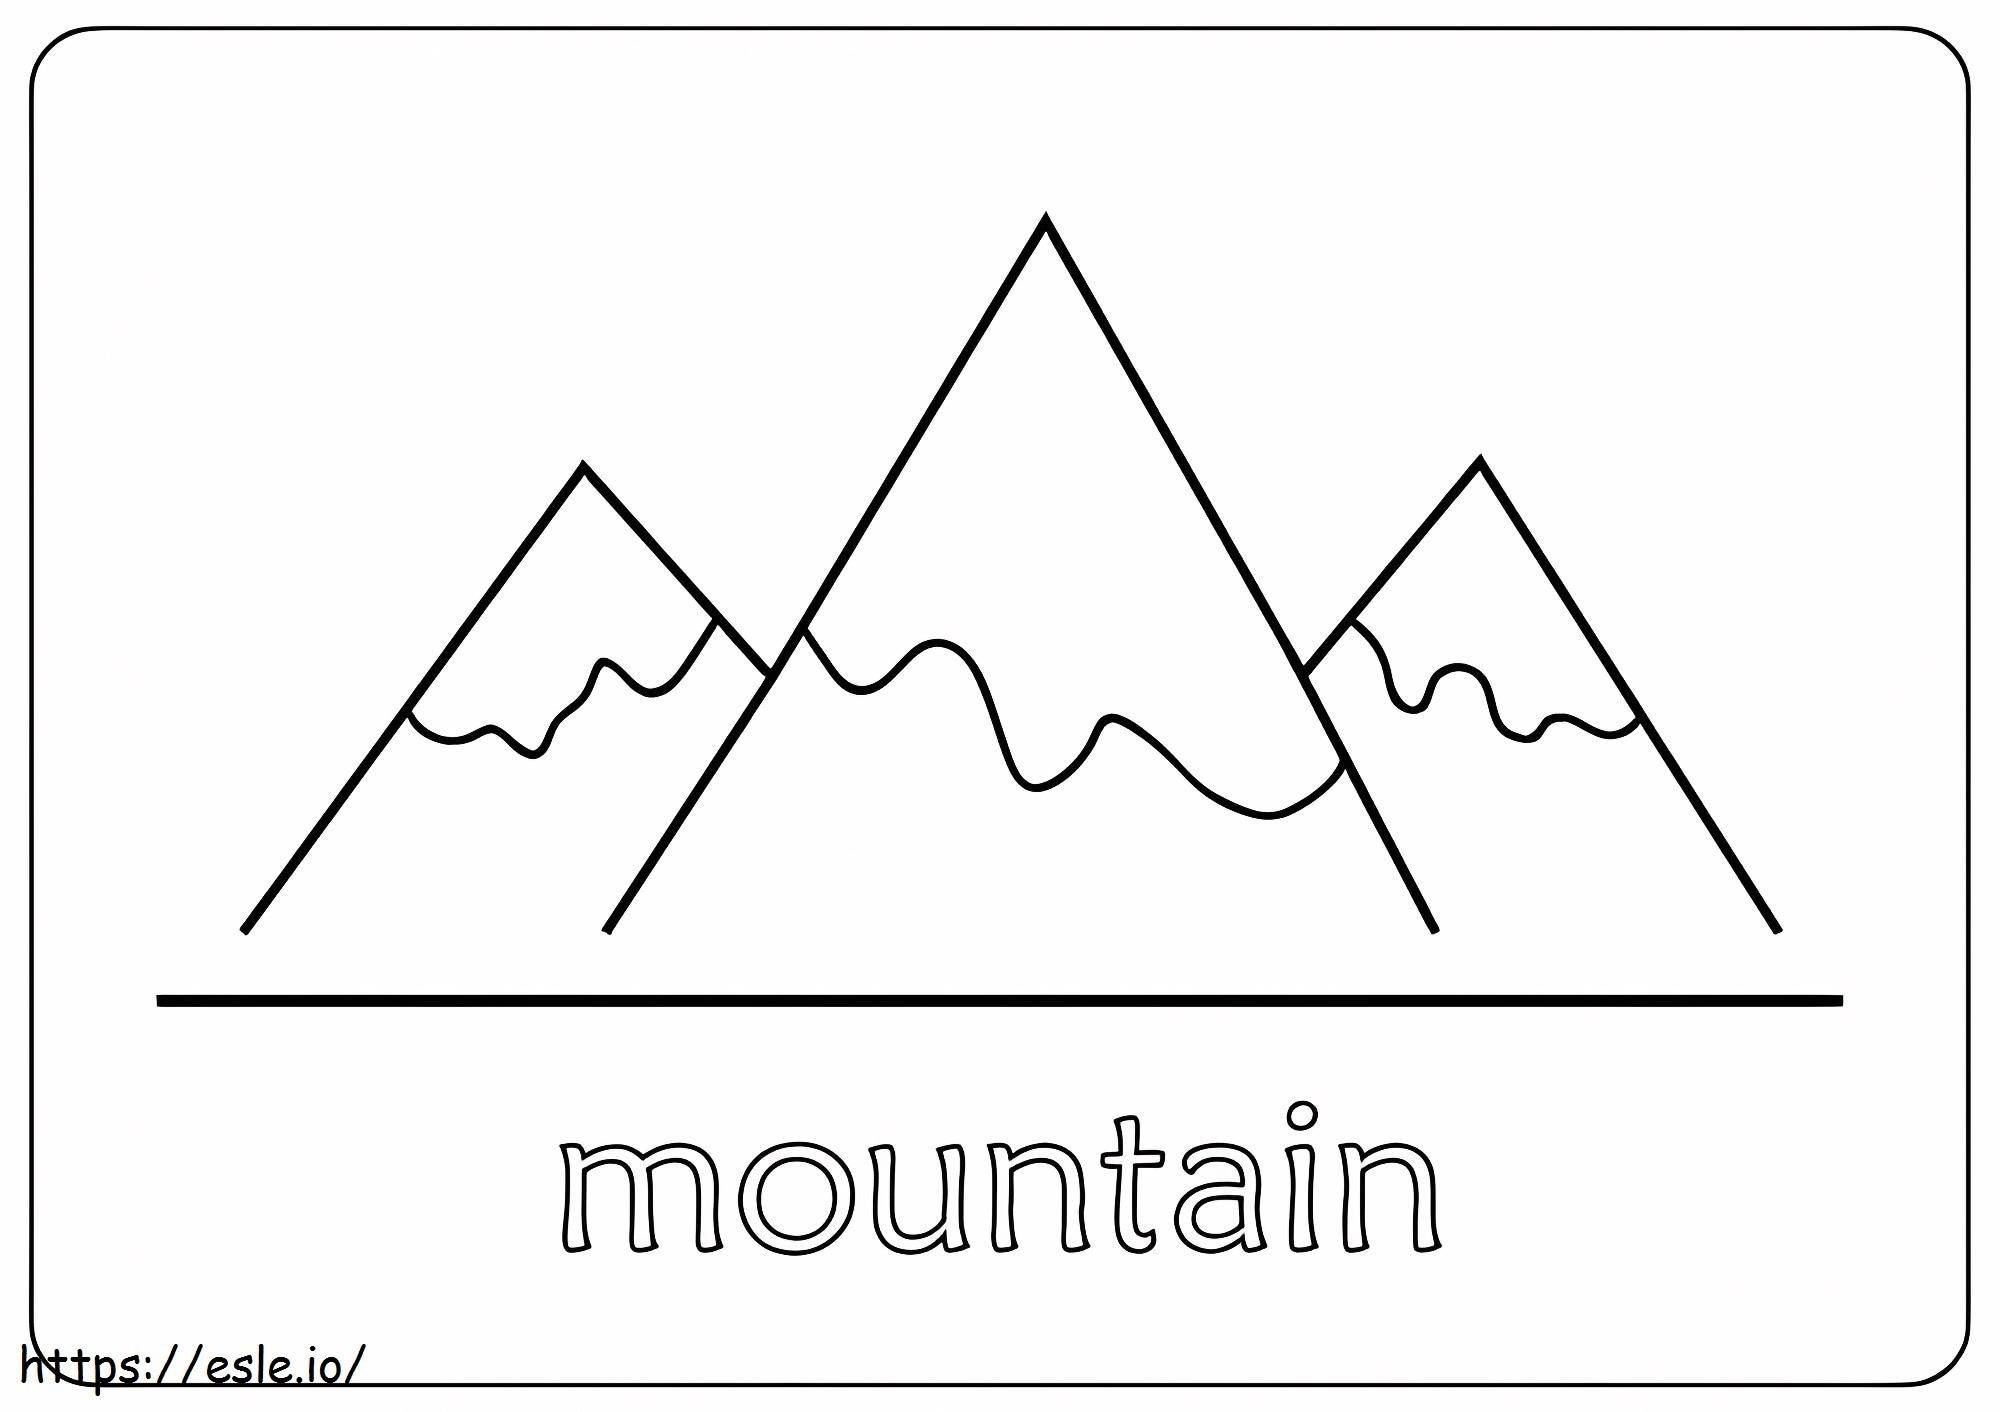 montanha simples para colorir